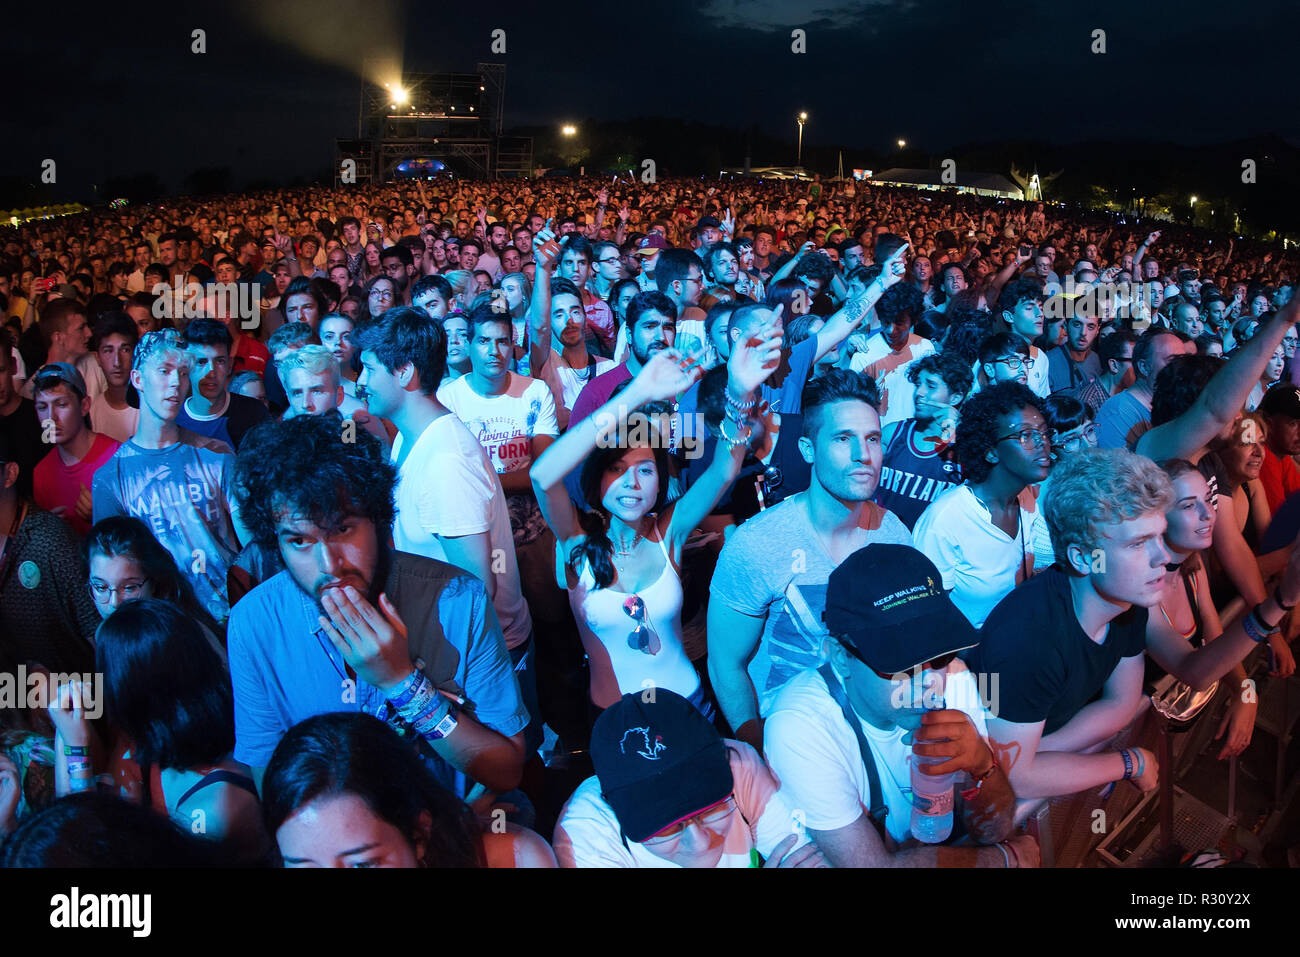 BENICASSIM, ESPAGNE - 21 JUL : la foule lors d'un concert au Festival de Musique le 21 juillet 2018 à Benicassim, Espagne. Banque D'Images